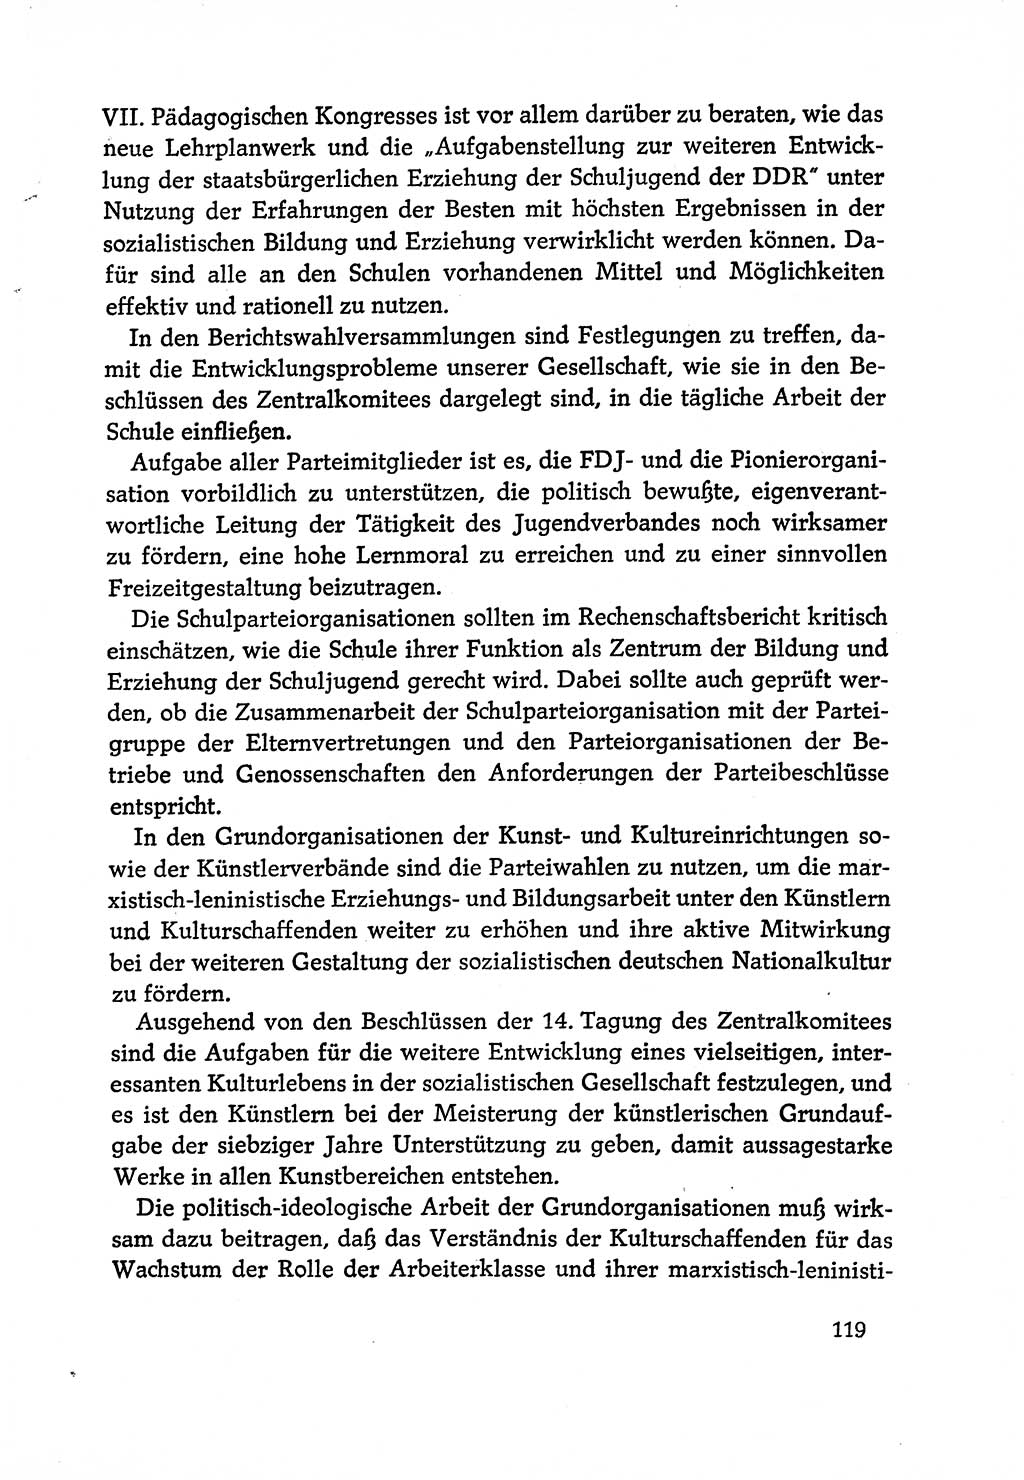 Dokumente der Sozialistischen Einheitspartei Deutschlands (SED) [Deutsche Demokratische Republik (DDR)] 1970-1971, Seite 119 (Dok. SED DDR 1970-1971, S. 119)